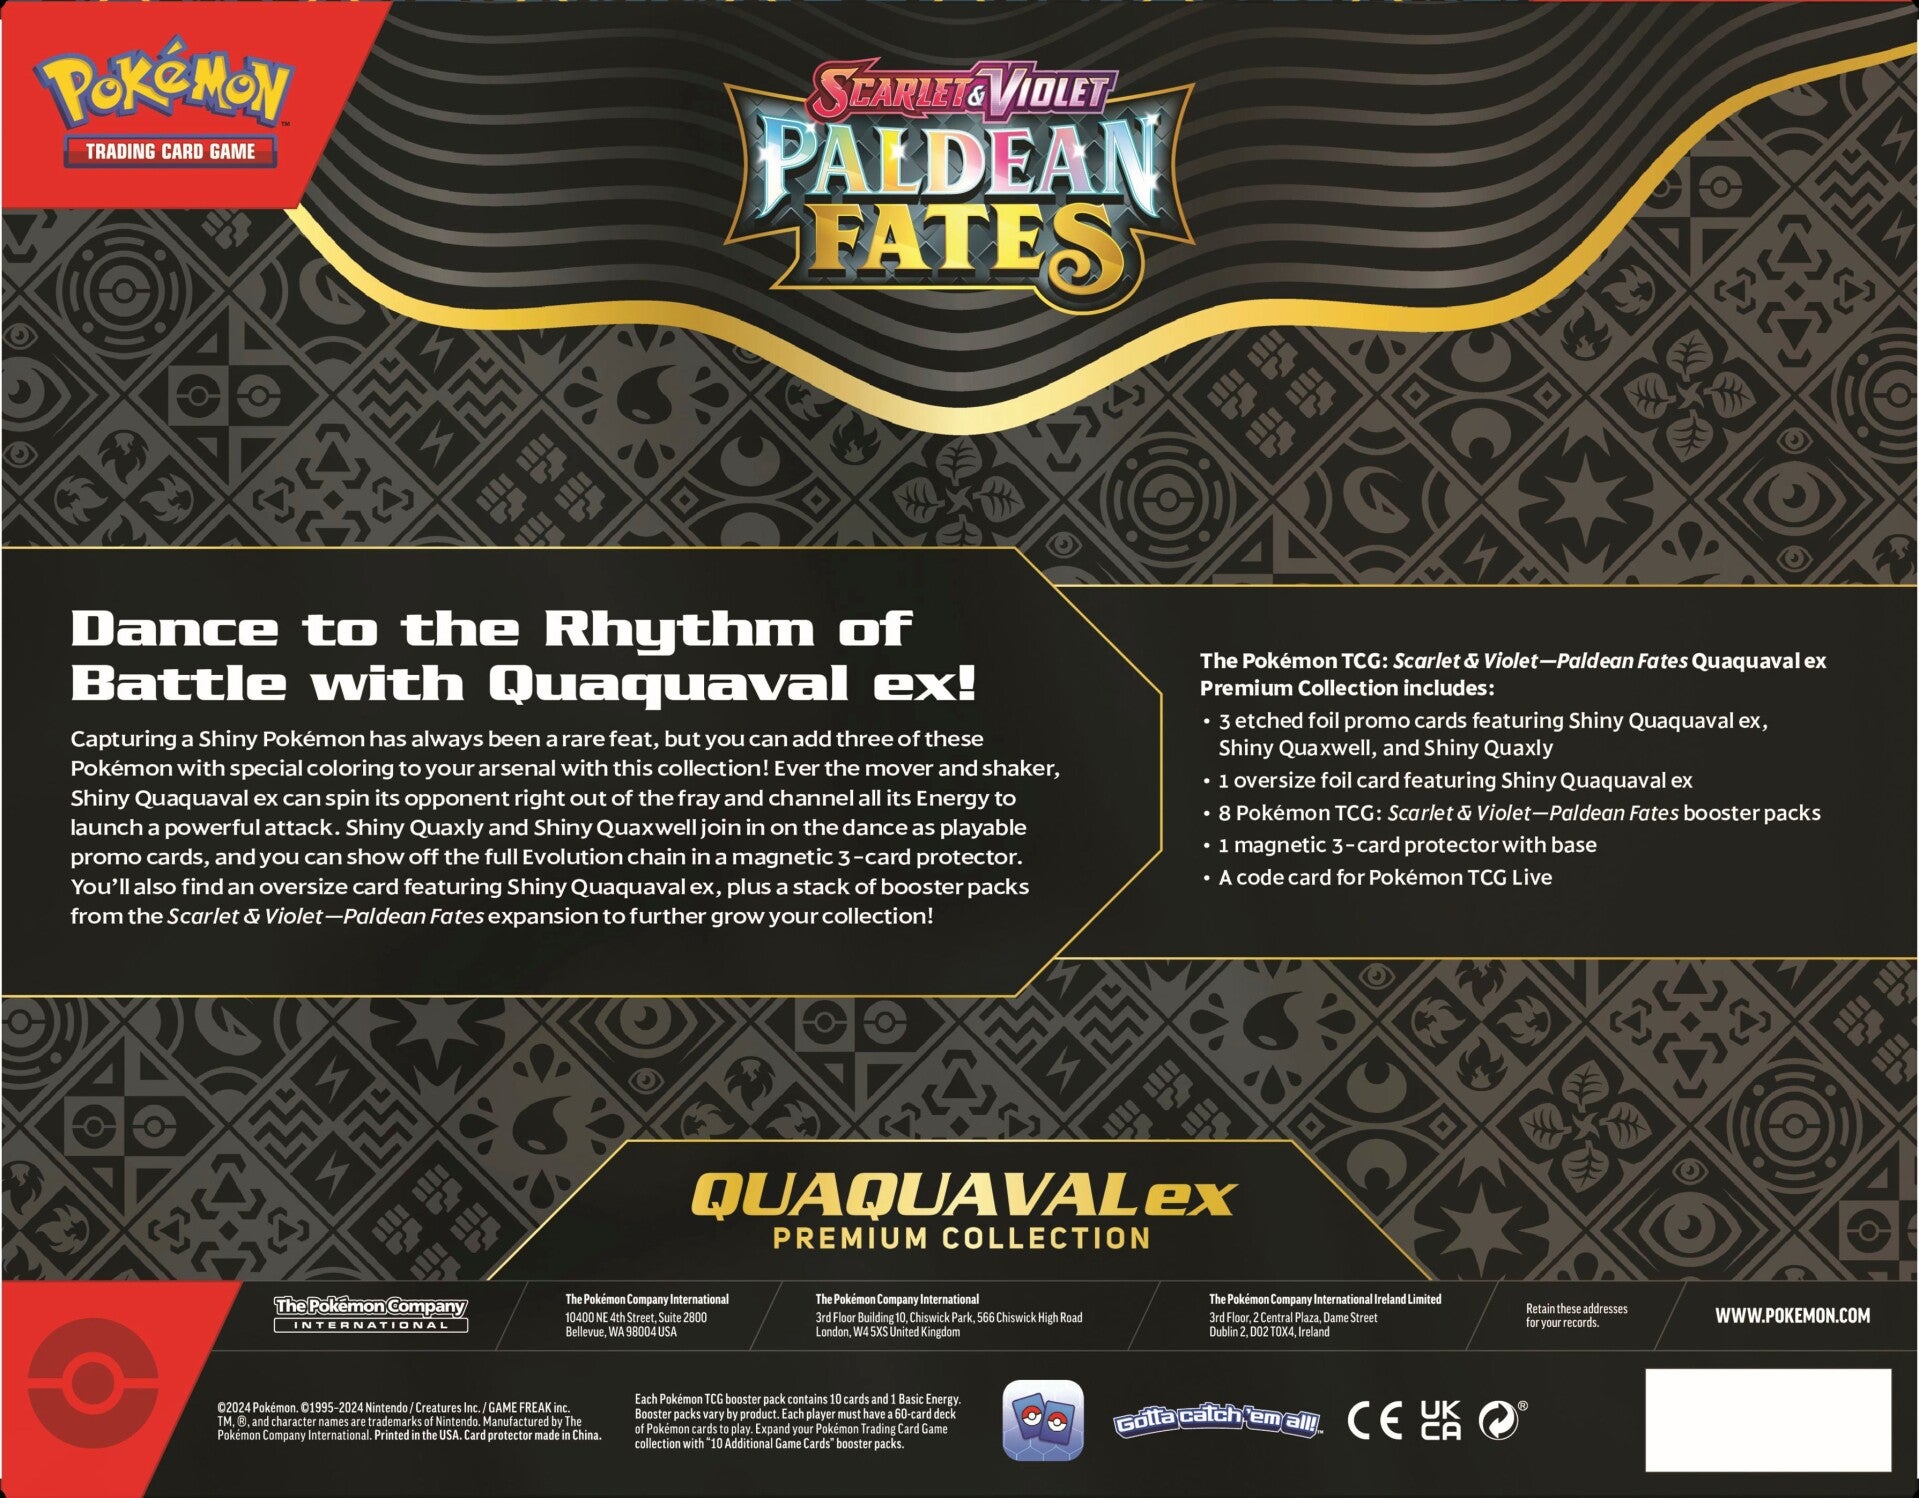 Paldean Fates - Premium Collection Box - Quaquaval ex